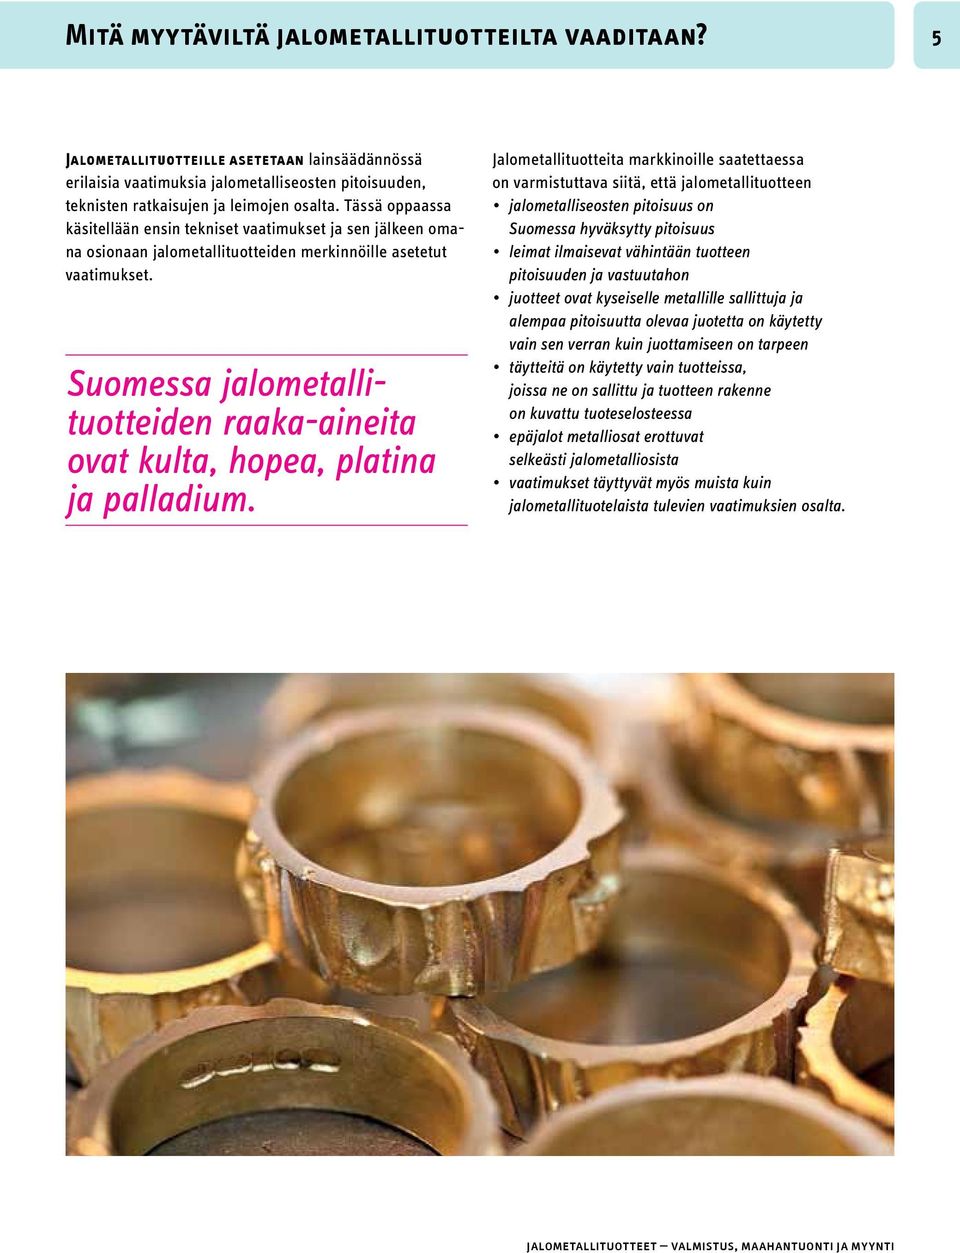 Suomessa jalometallituotteiden raaka-aineita ovat kulta, hopea, platina ja palladium.